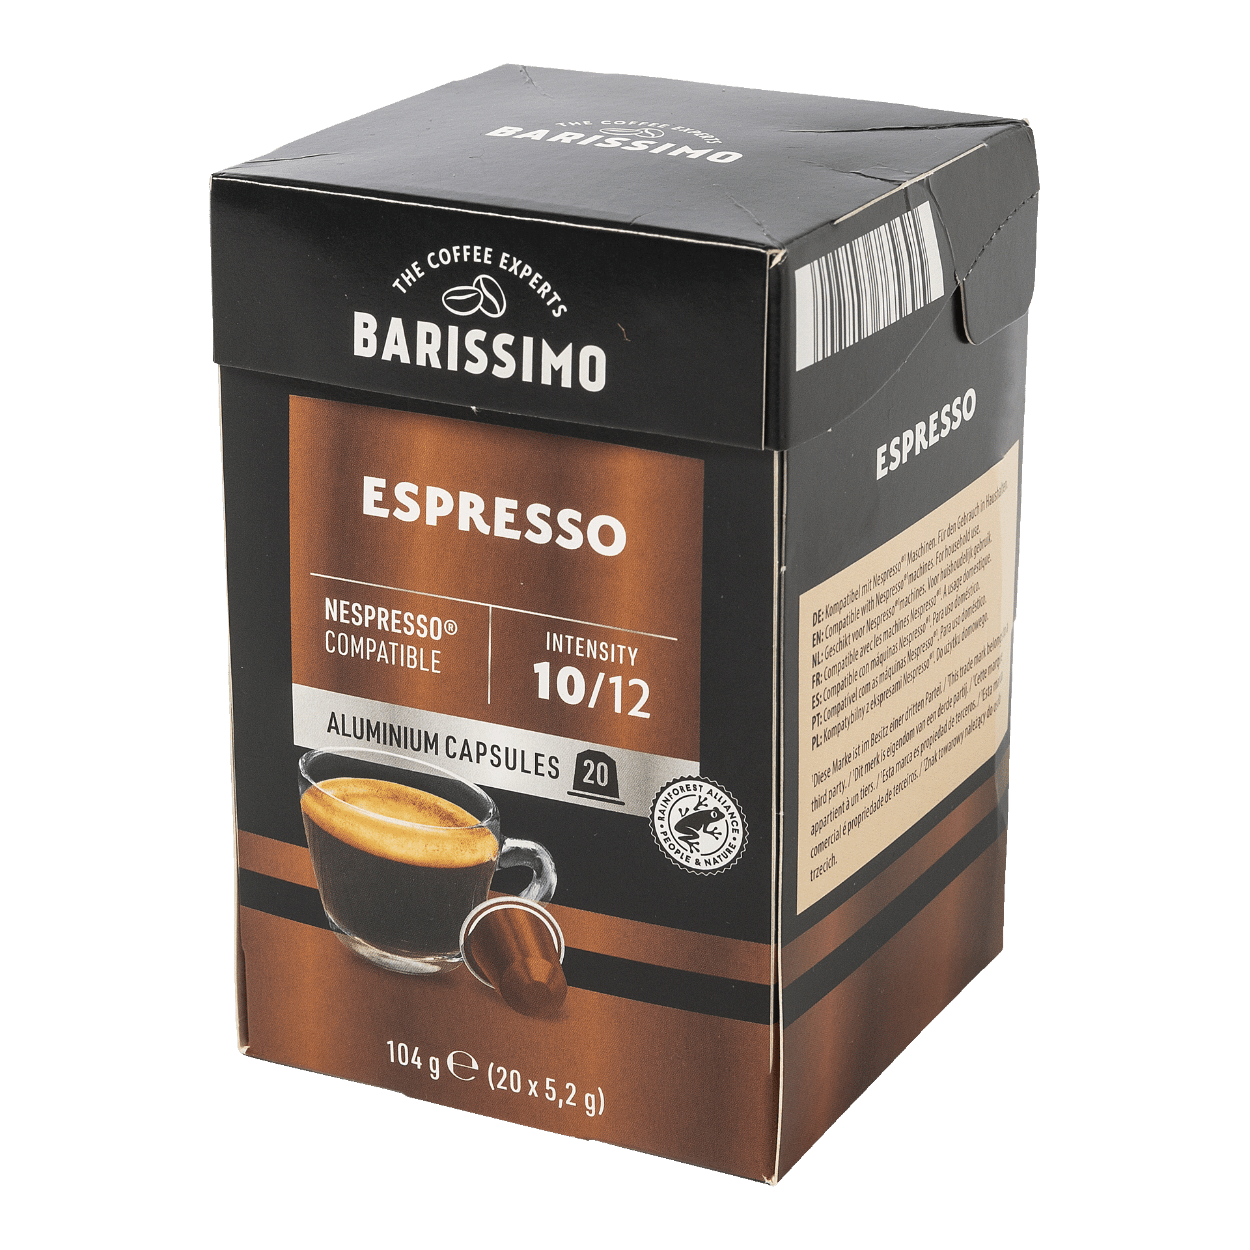 Capsule café et dosette café : notre sélection au meilleur prix